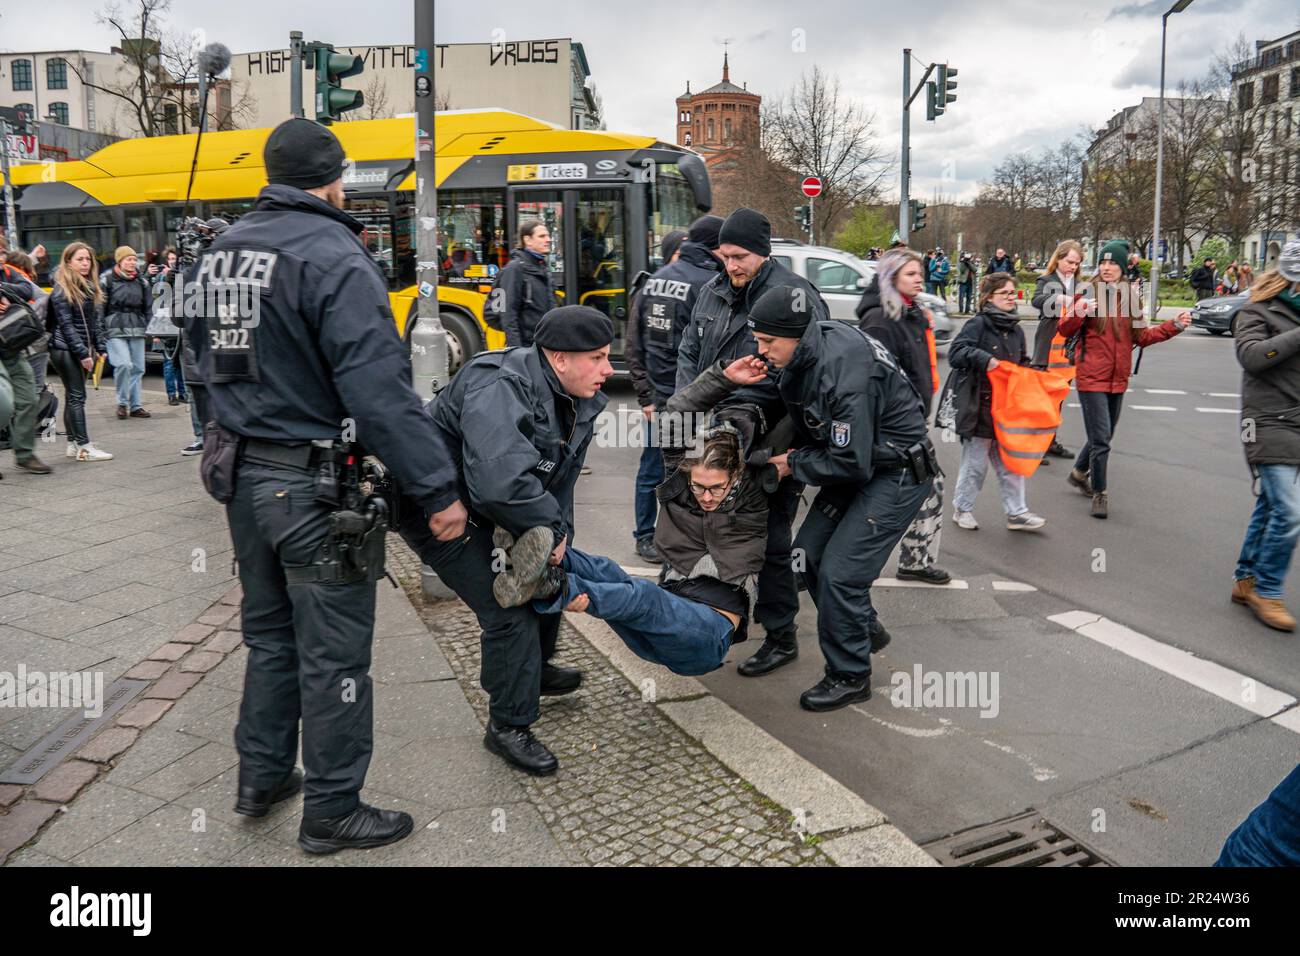 Letzte Generation blockiert Schillingbrücke in Berlin, Polizeieinsatz Stock Photo